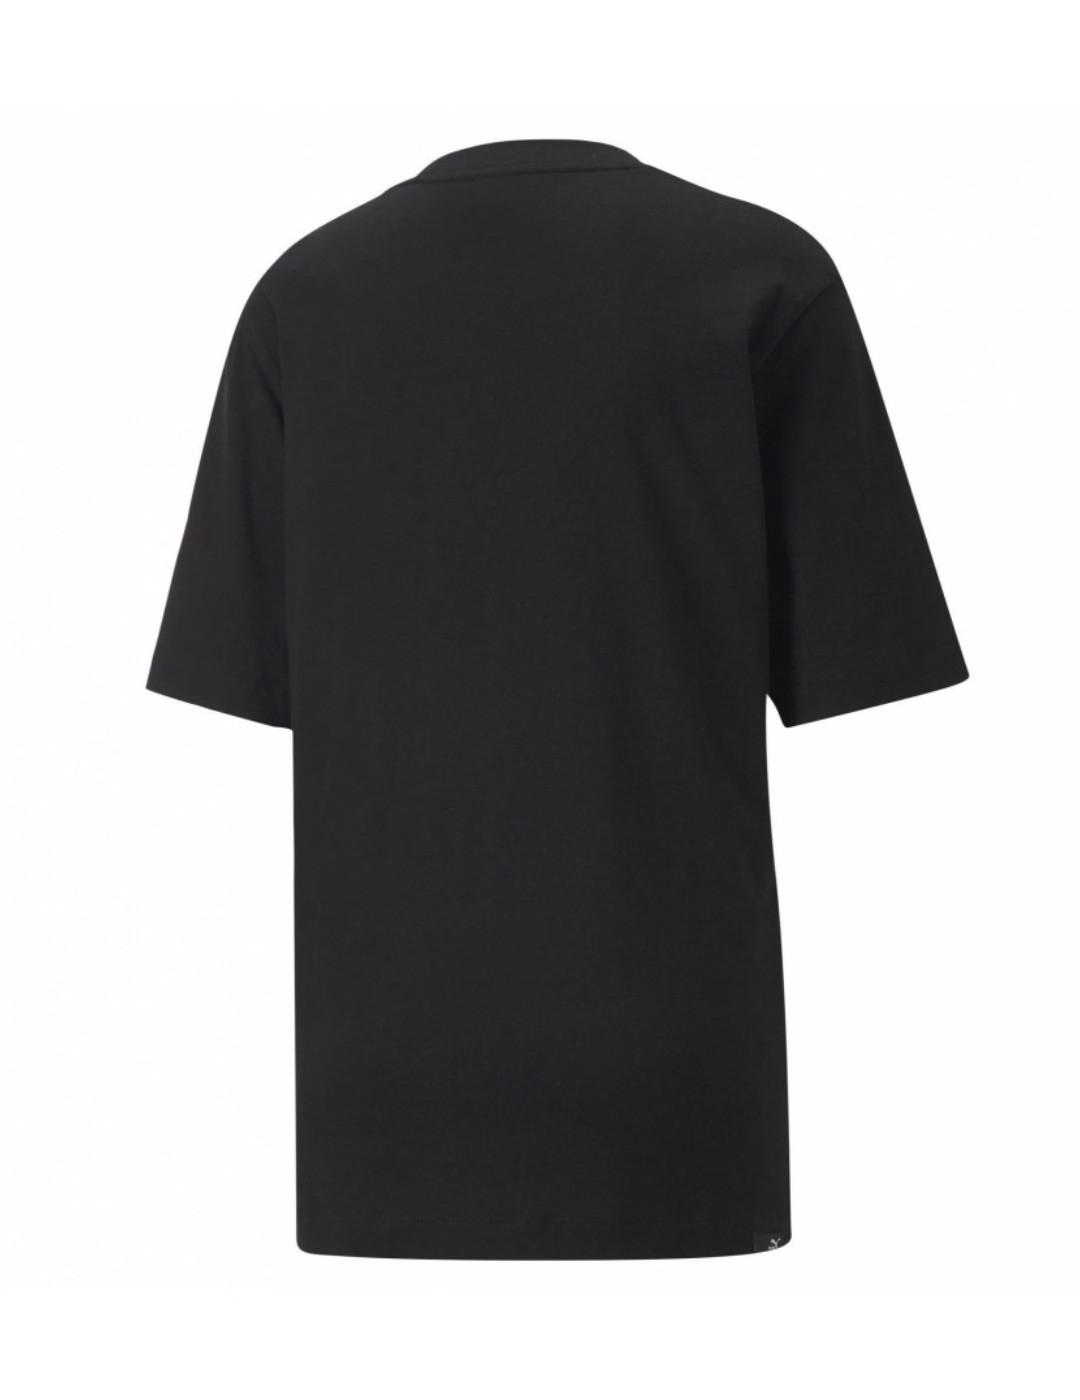 Camiseta Puma manga corta de color negra para mujer